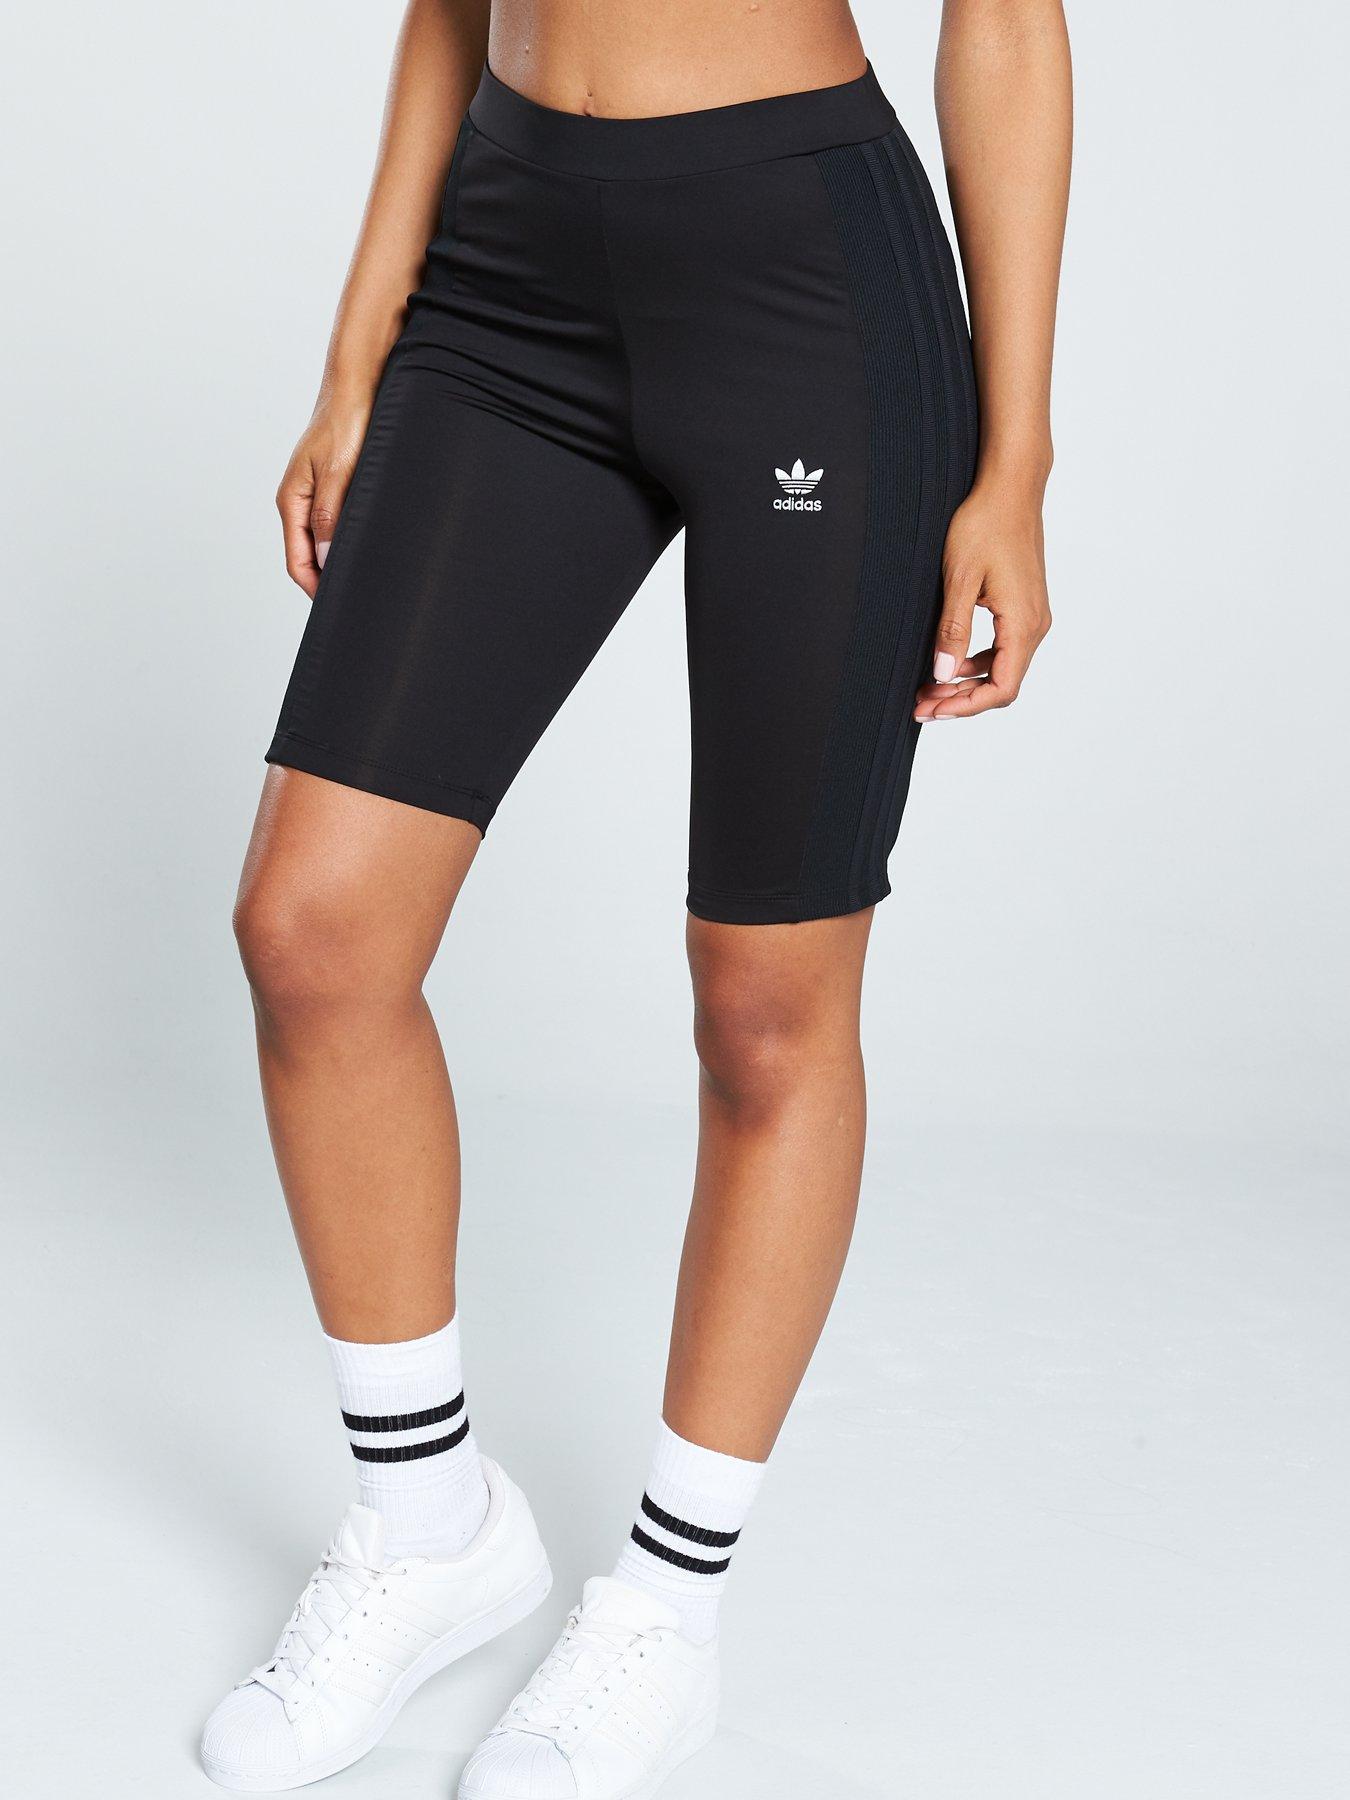 adidas cycle shorts